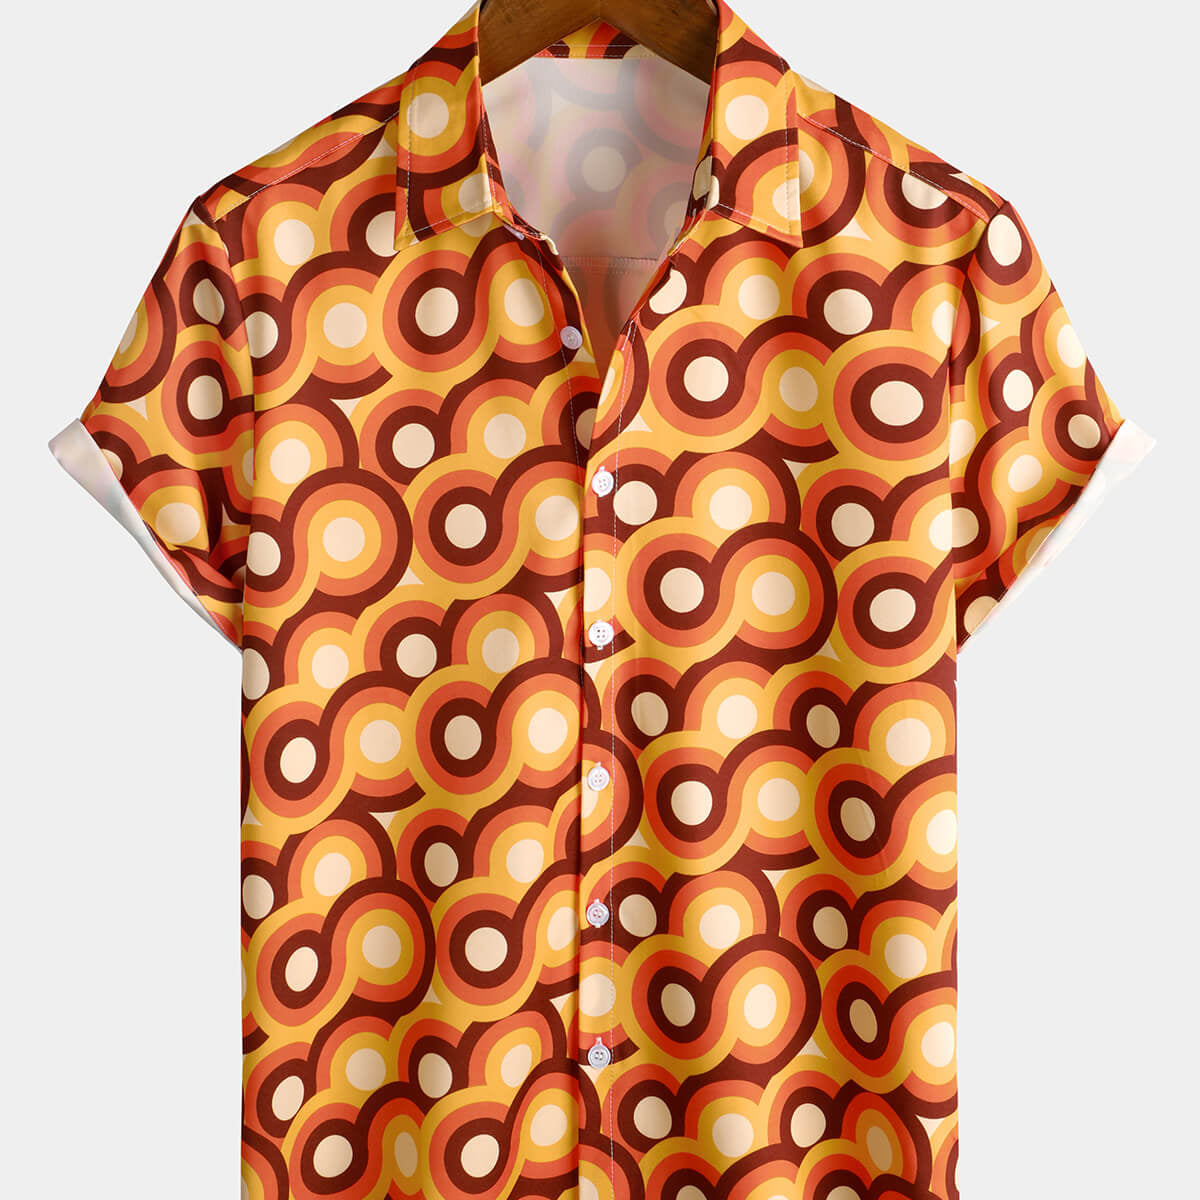 Camisa de manga corta de playa de verano con círculo geométrico vintage con botones retro naranja de los años 70 para hombre